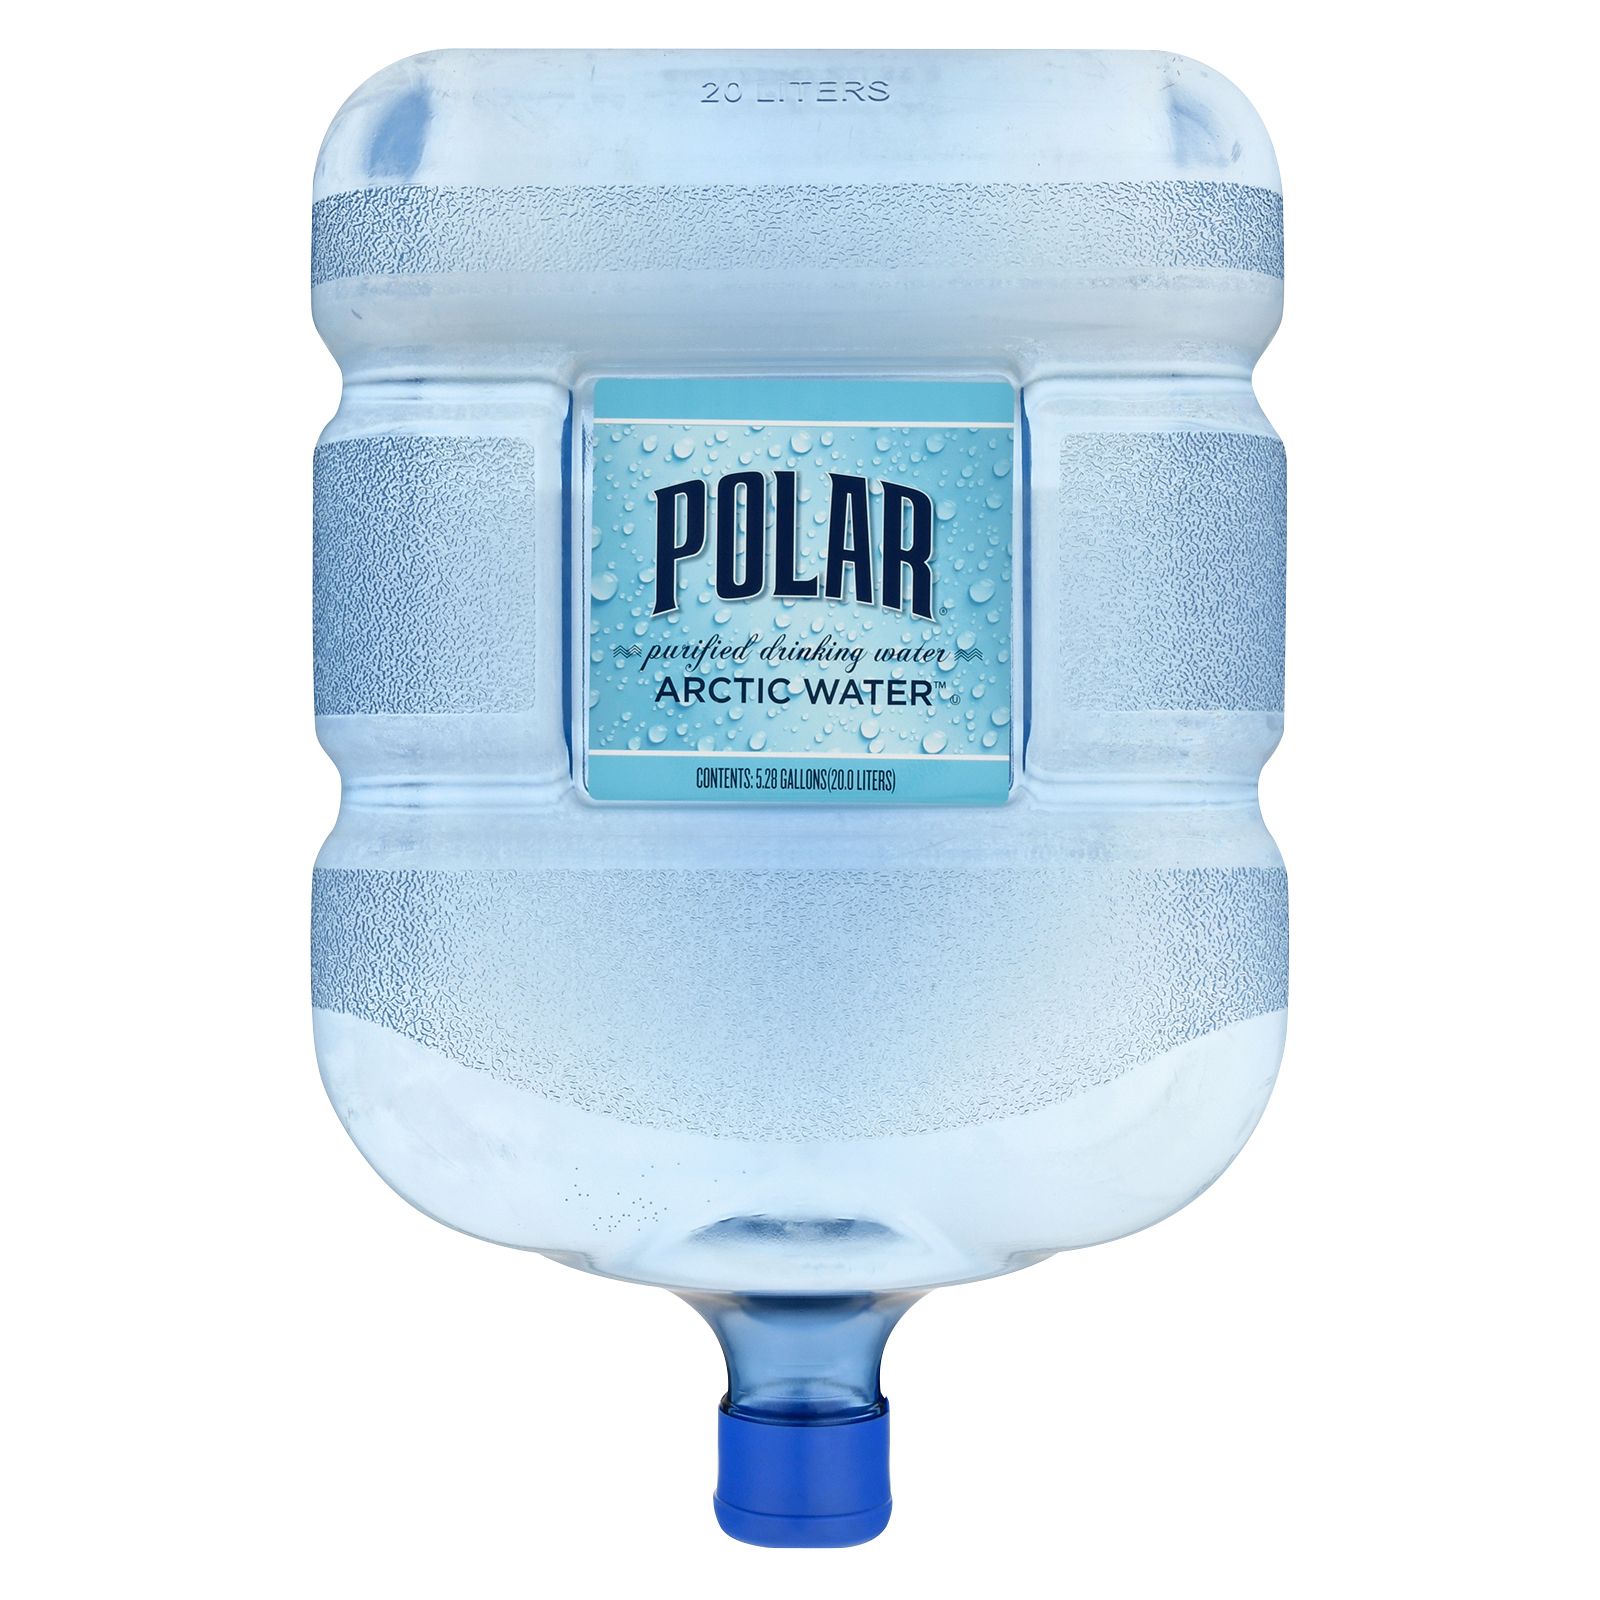 40 liter water cooler price